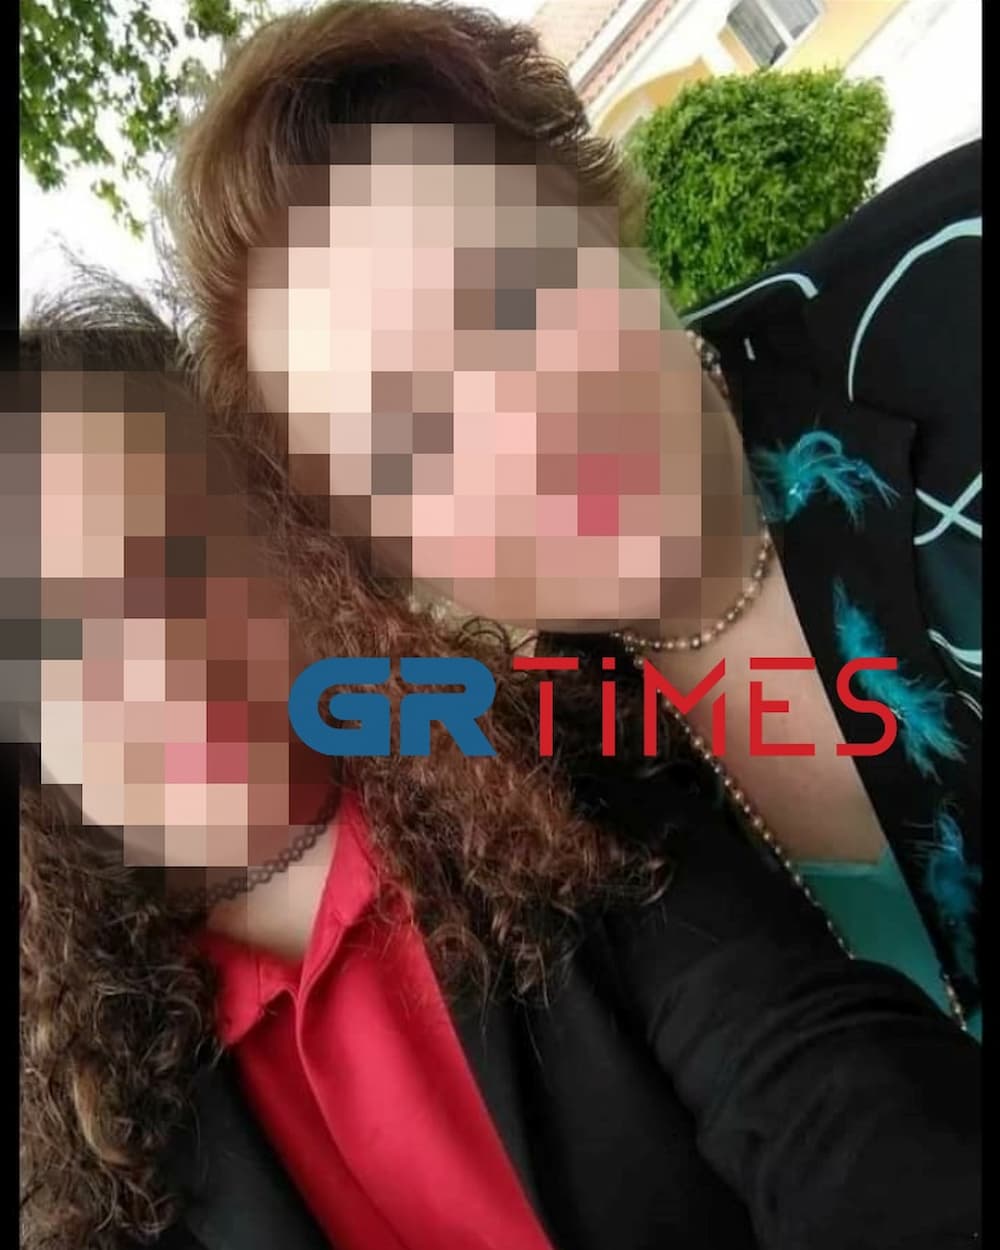 14χρονη μπουλινγκ λημνιος 7 1 - Στα δικαστήρια διευθύντρια σχολείου και μαθητής για υπόθεση bullying σε 14χρονη - «Της φώναζε πελεκάνο, γυαλάκια, χοντρέλα»